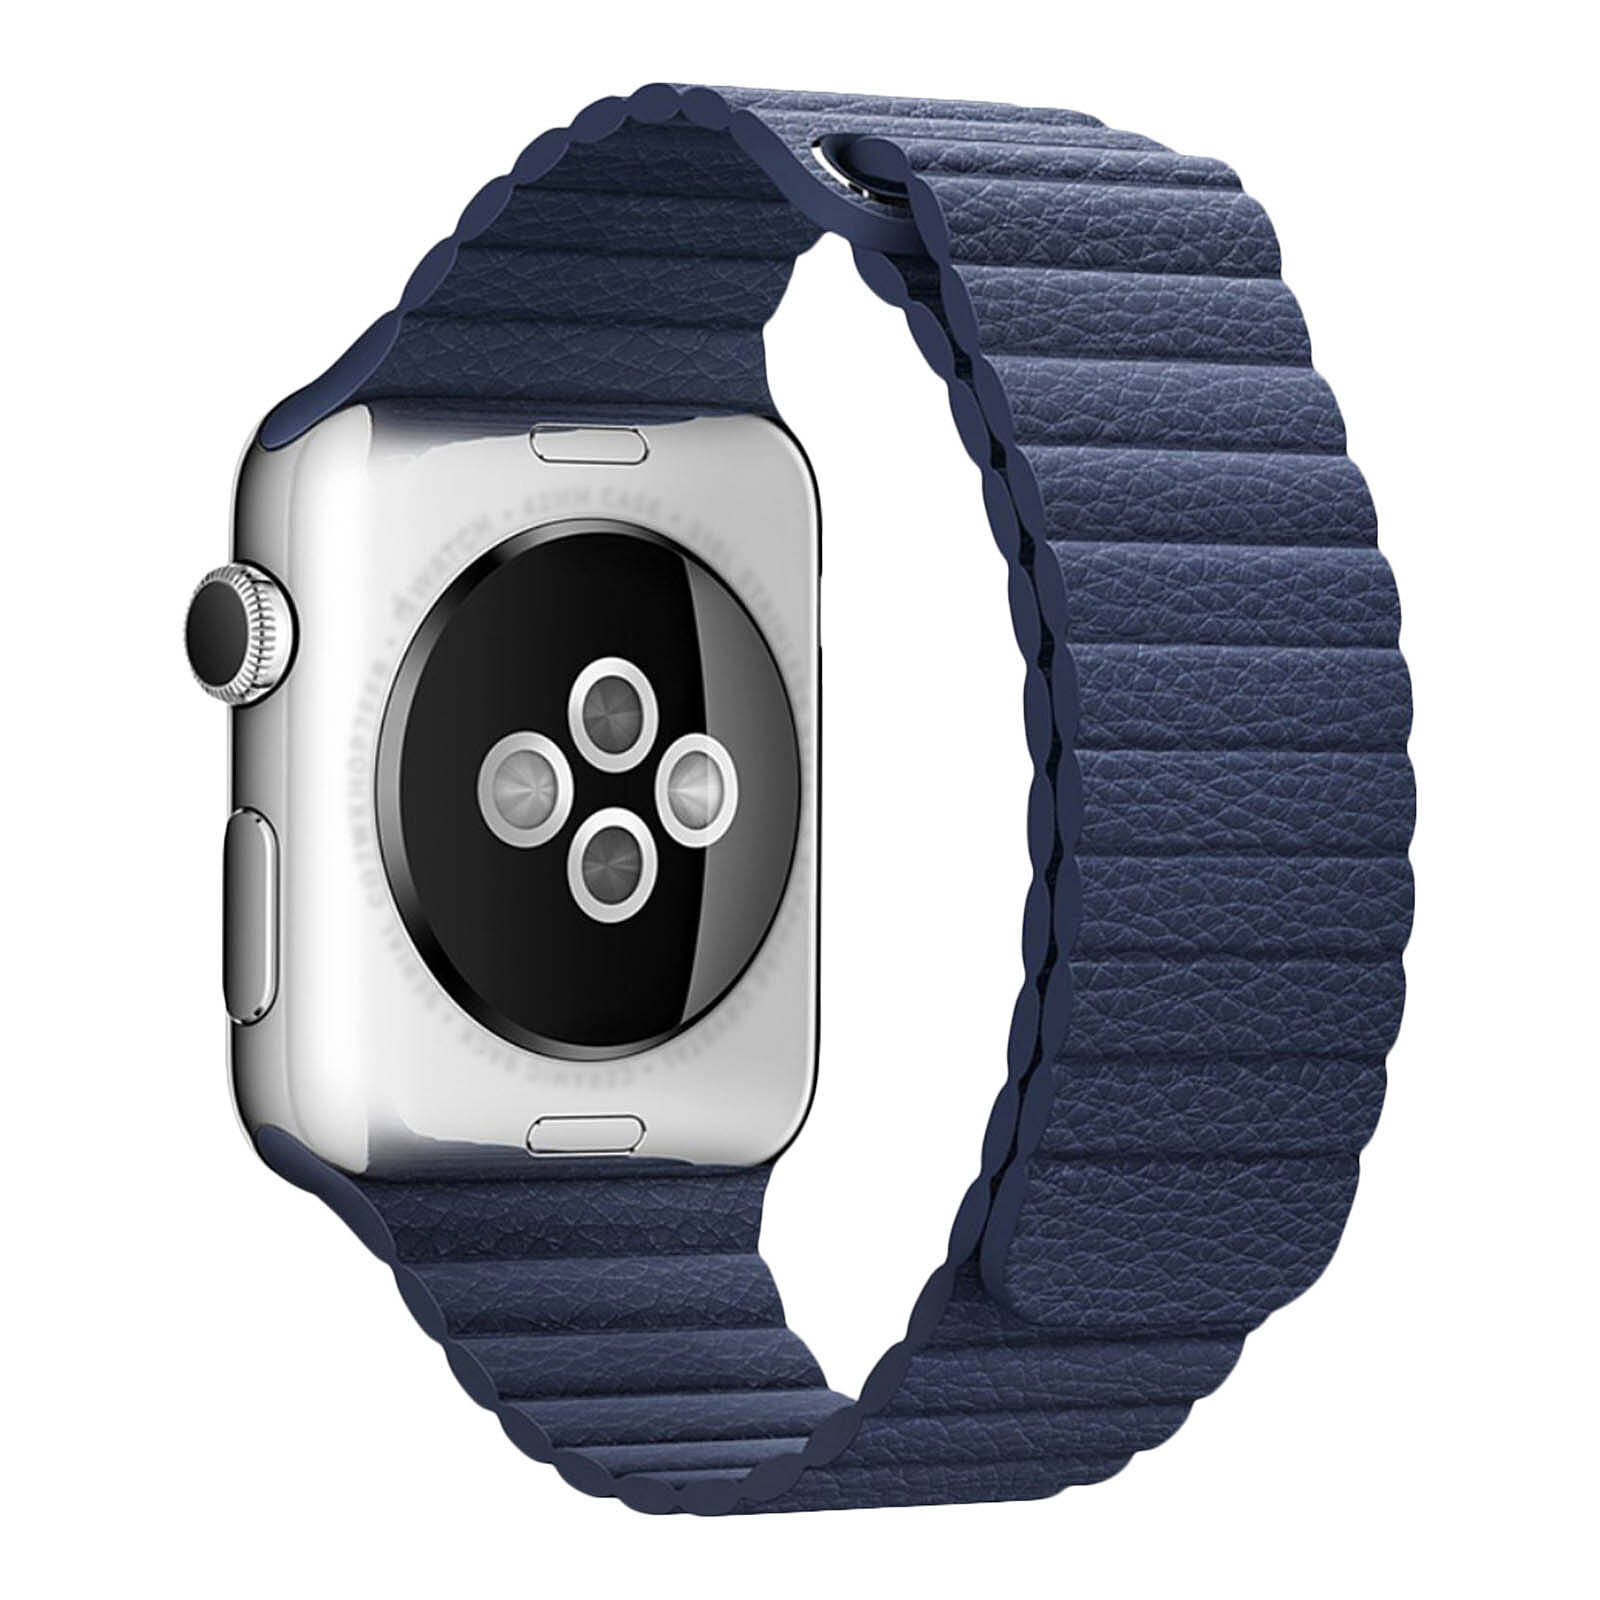 Apple watch ремешок оригинал купить. Кожаный ремешок для Эппл вотч 44 мм. Кожаный ремешок для Apple watch 42mm. Ремешки для Эппл вотч 7. Ремешки для Apple IWATCH 3 42mm.